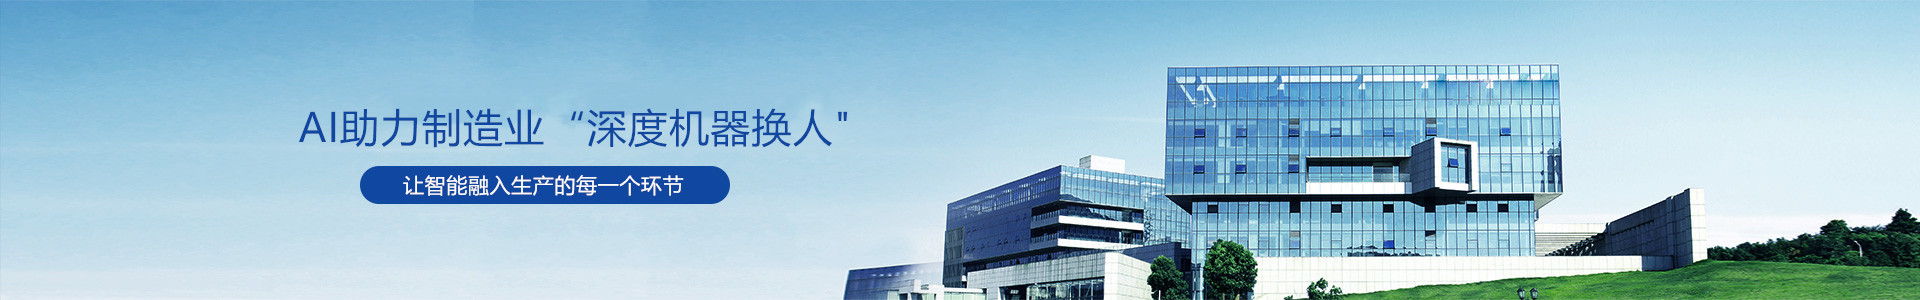 產品中心-南京英格伯格智能裝備有限公司-南京英格伯格智能裝備有限公司